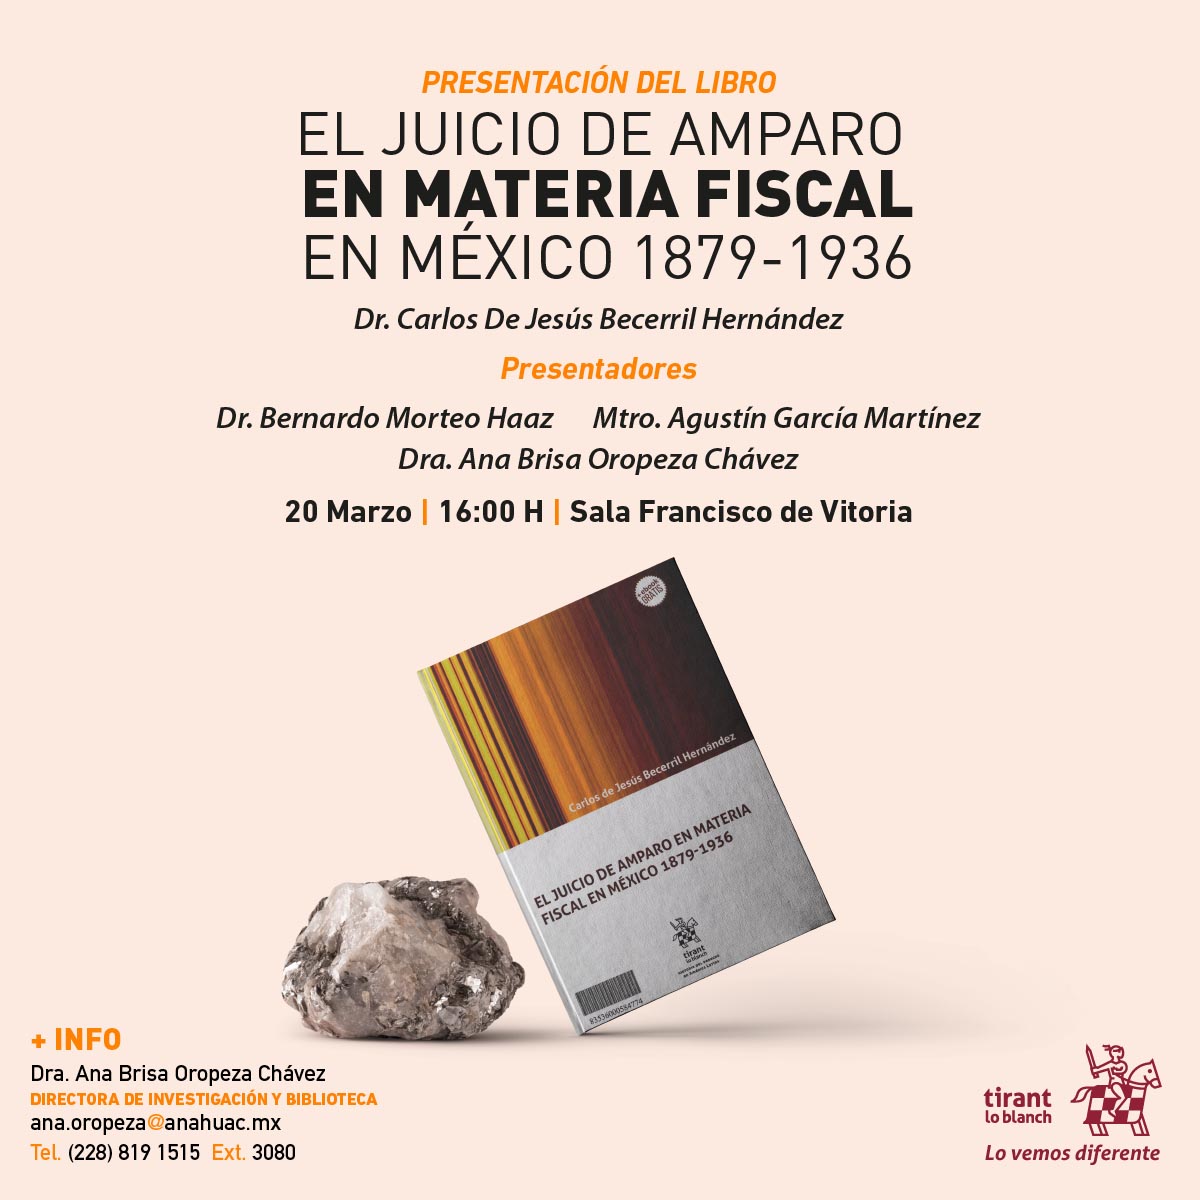 El Juicio de Amparo en Materia Fiscal en México 1879-1936